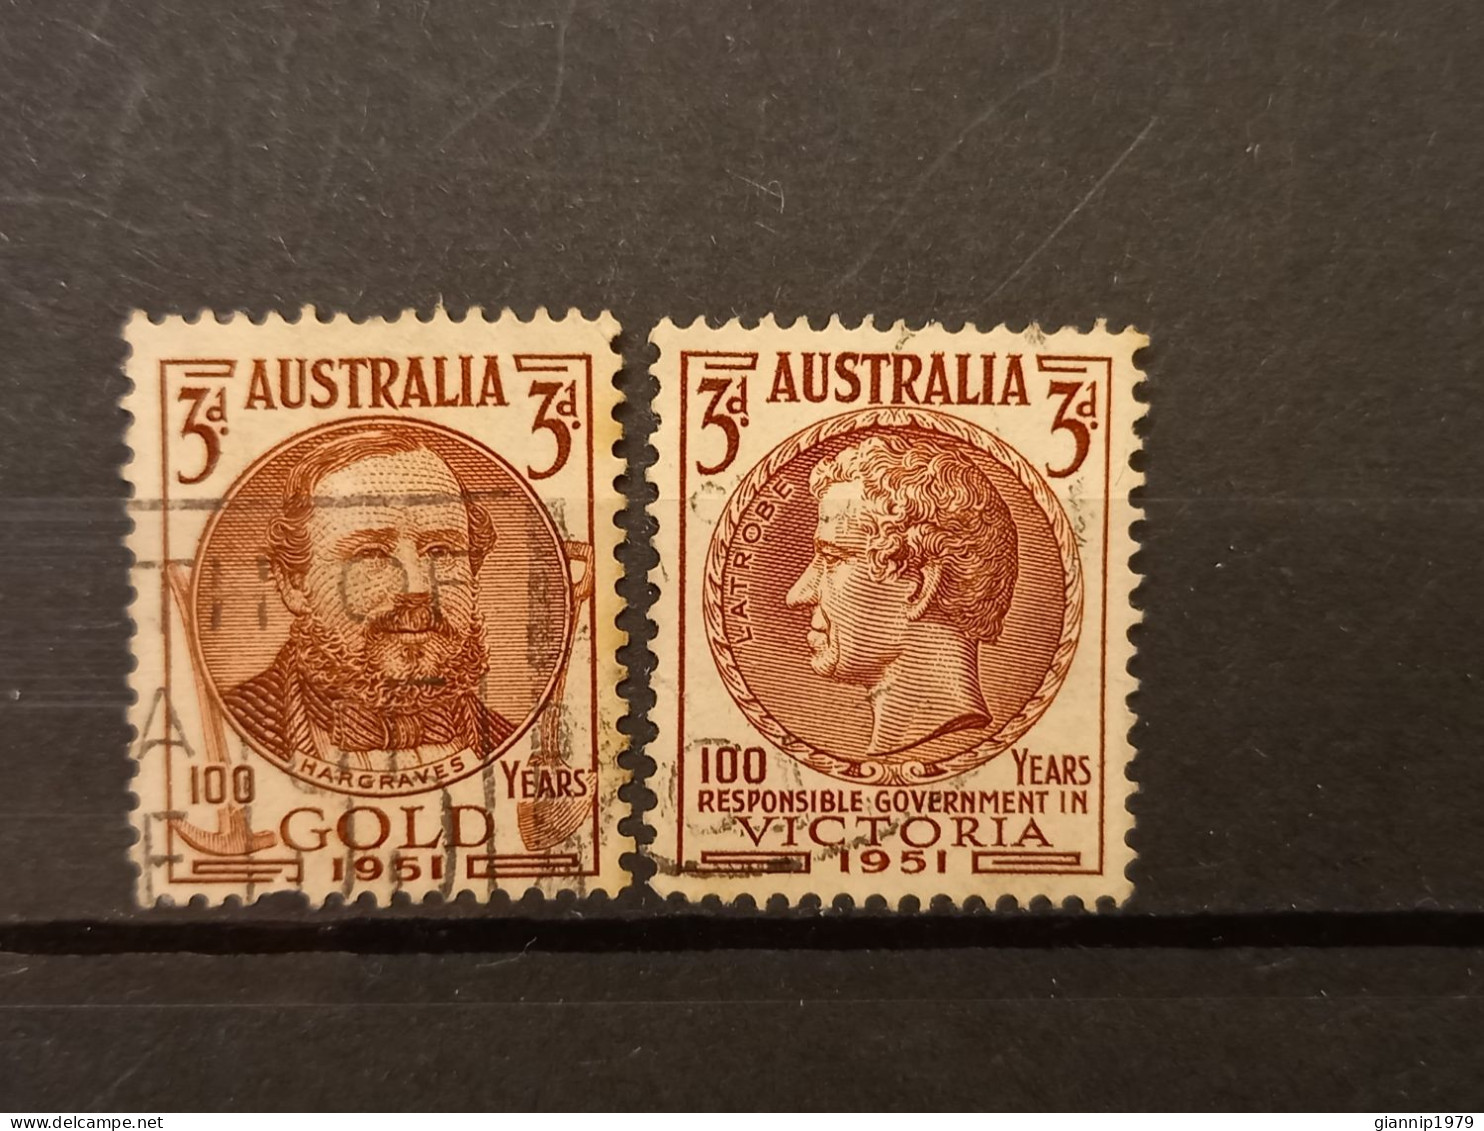 FRANCOBOLLI STAMPS AUSTRALIA AUSTRALIAN 1951 USED SERIE COMPLETE COMPLETA 100 ANNI ANNIVERSARY ORO VICTORIA OBLITERE' - Gebruikt